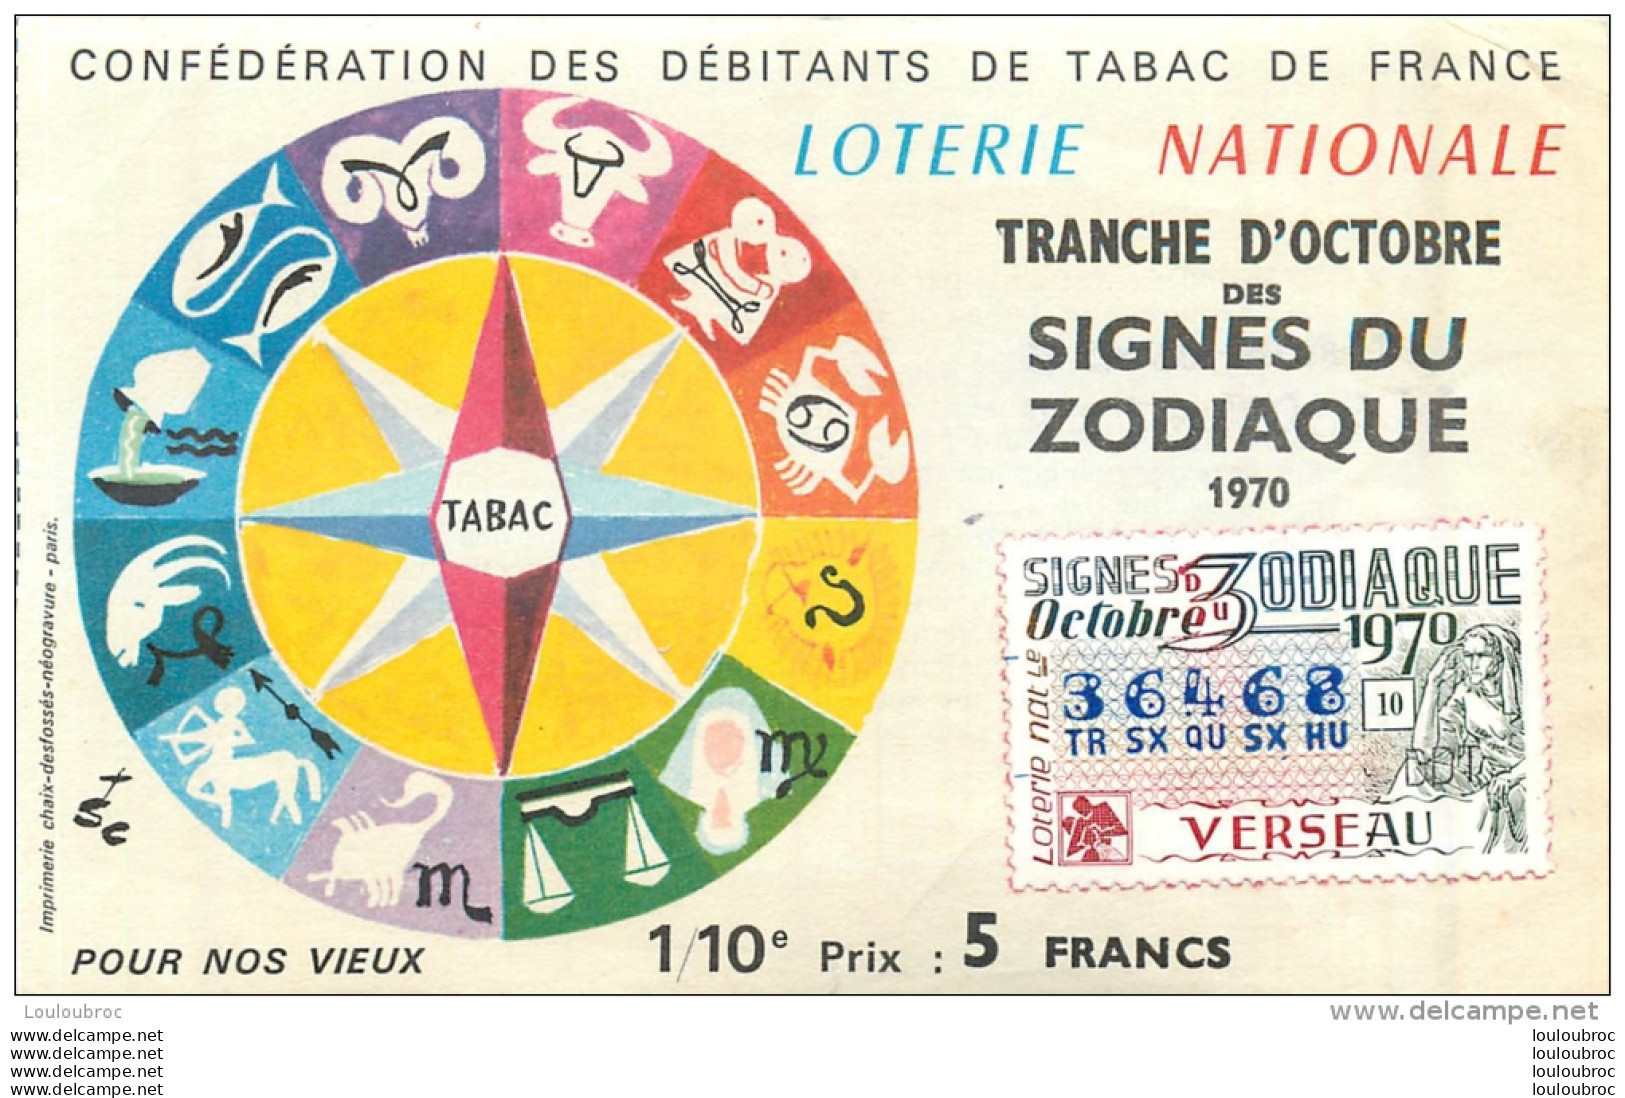 BILLET DE LOTERIE NATIONALE 1979 SIGNES DU ZODIAQUE VERSEAU - Lotterielose